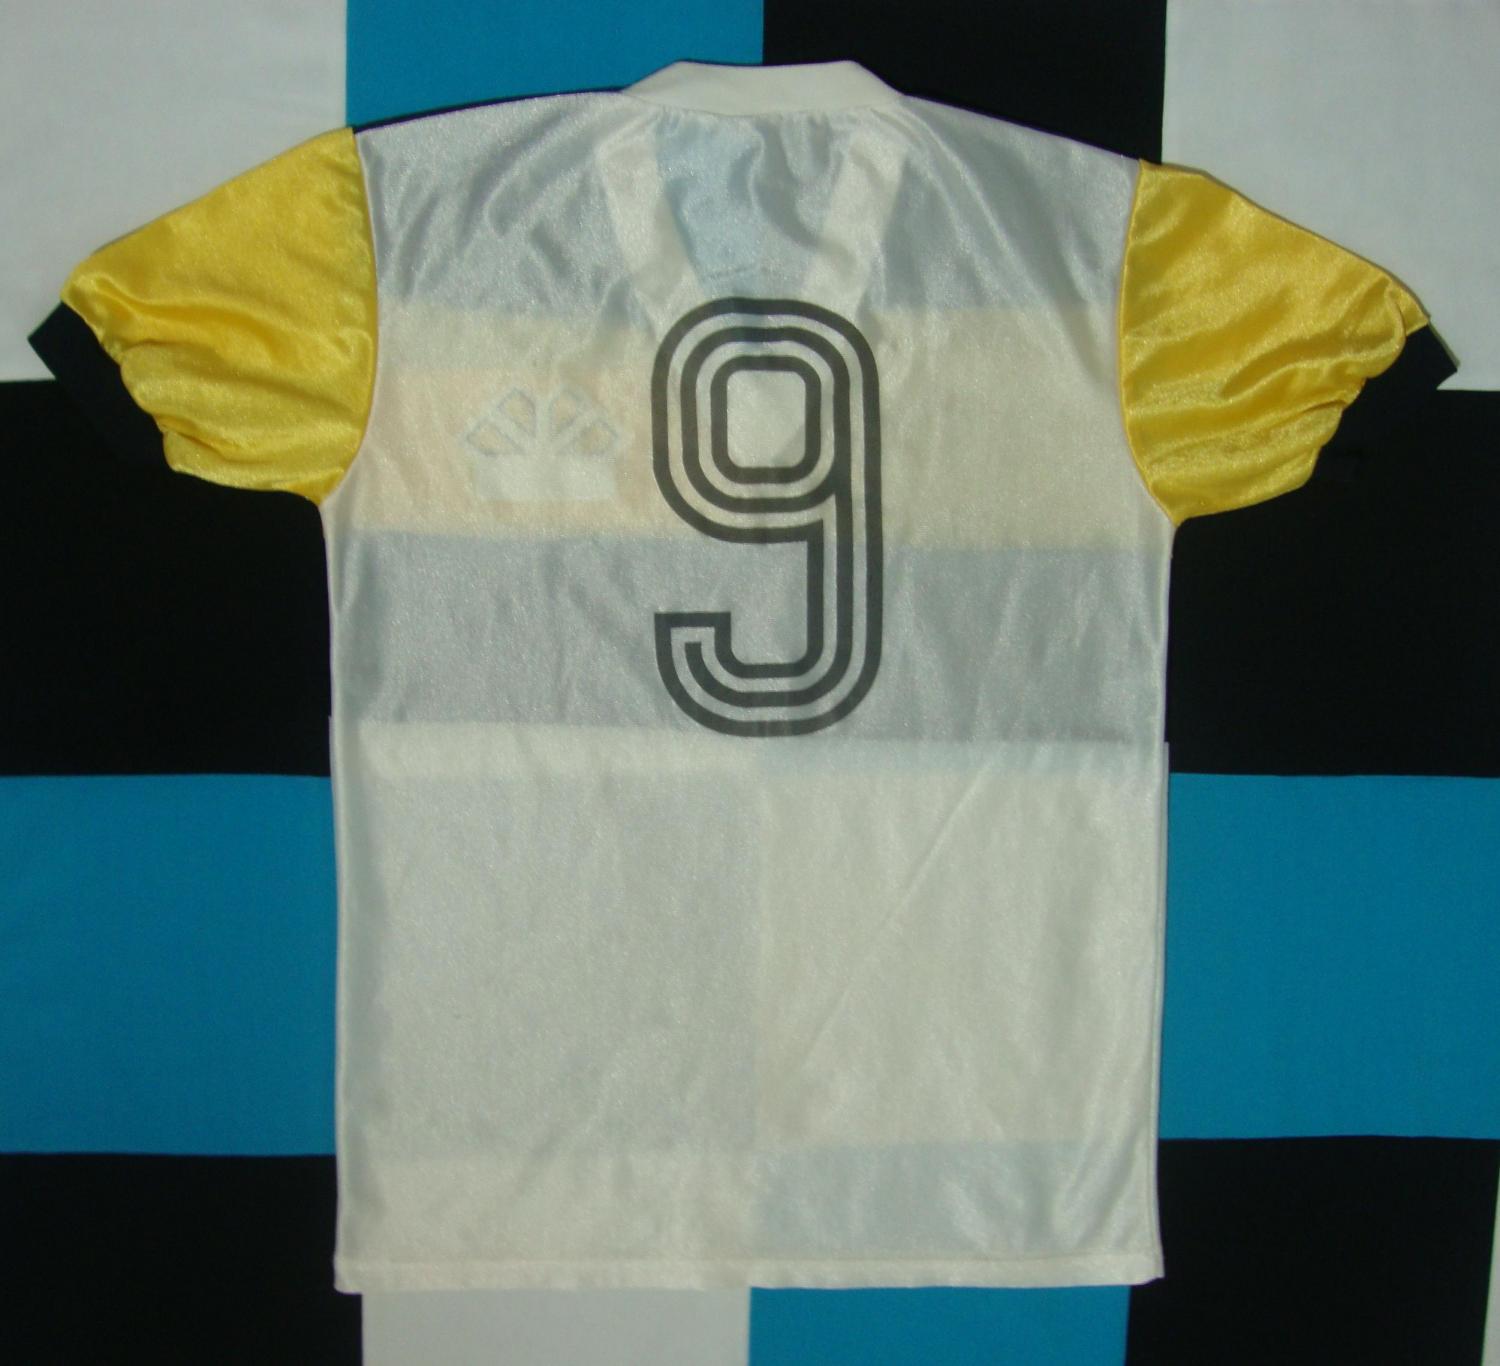 maillot de criciúma esporte clube domicile 1985 rétro